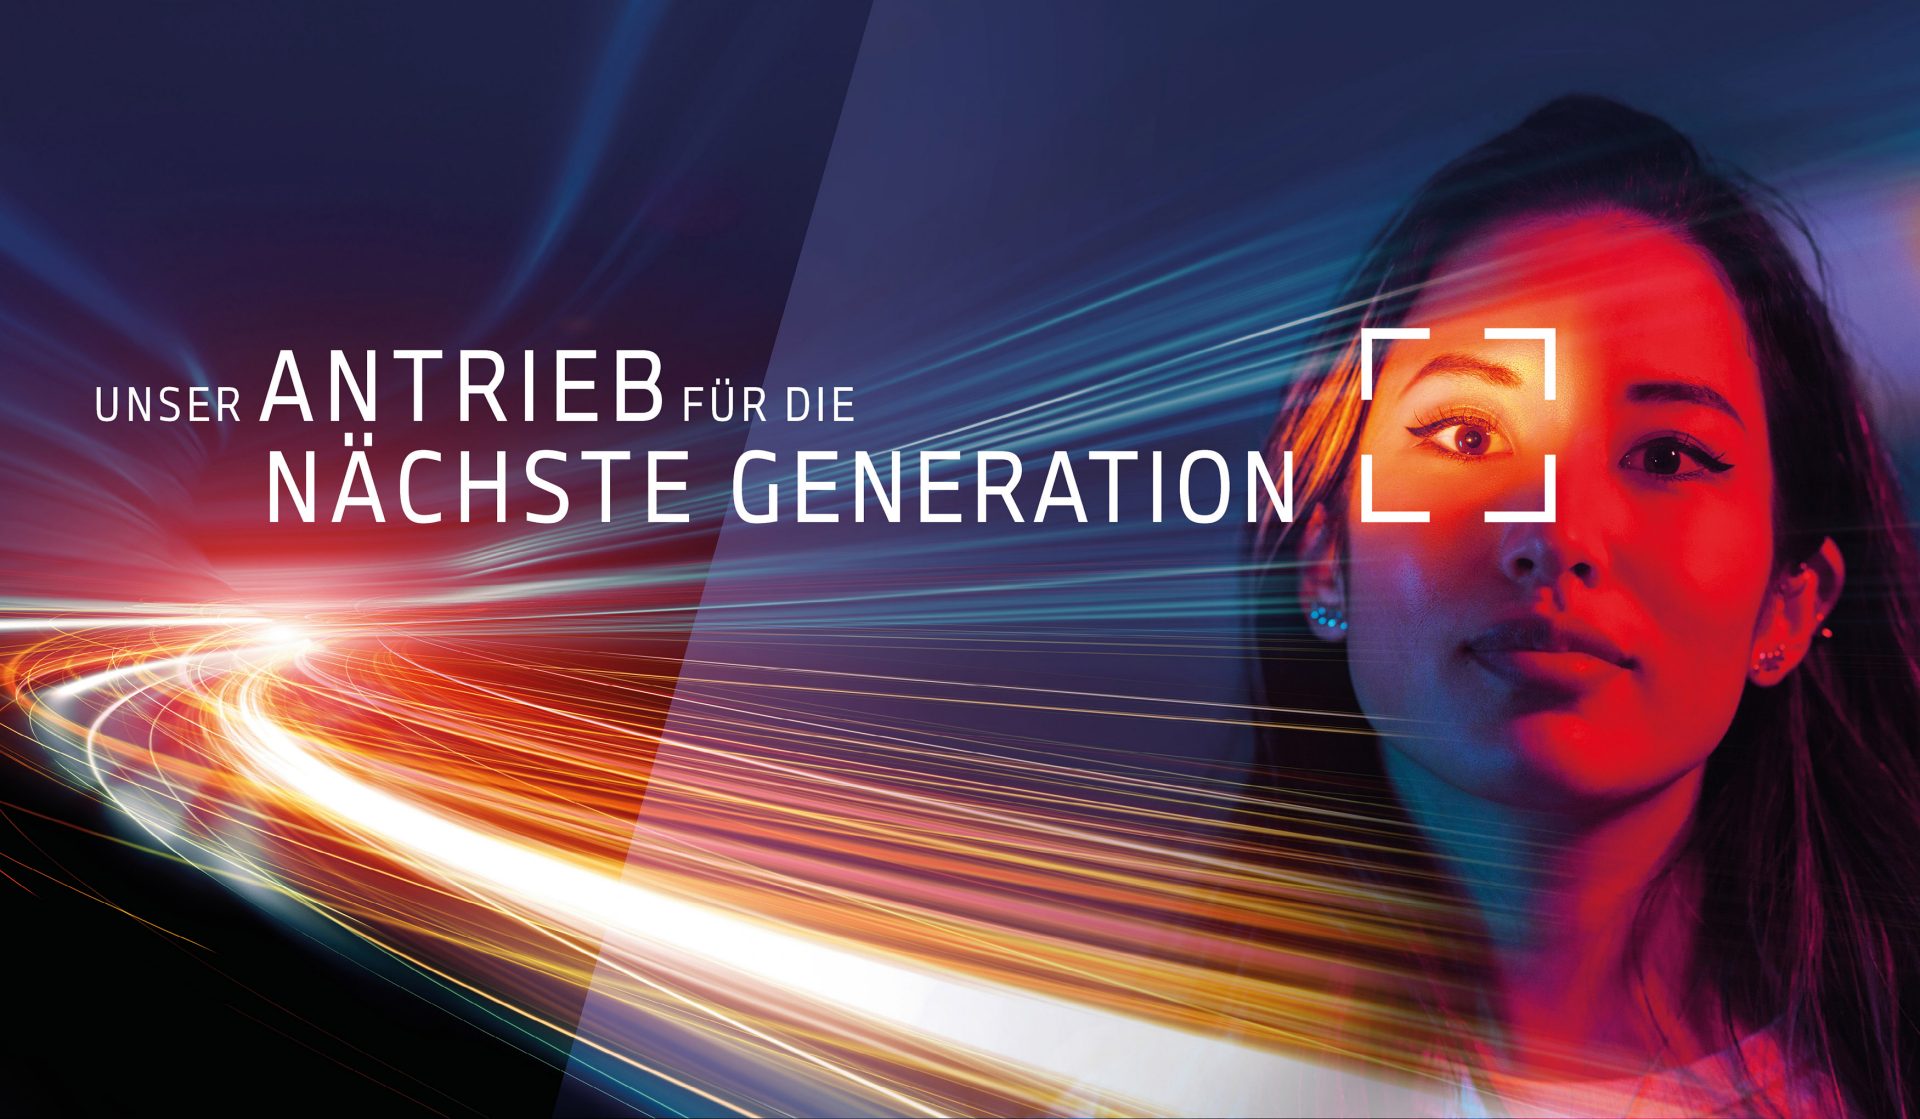 Unser Antrieb für die nächste Generation | Sujet + Slogan